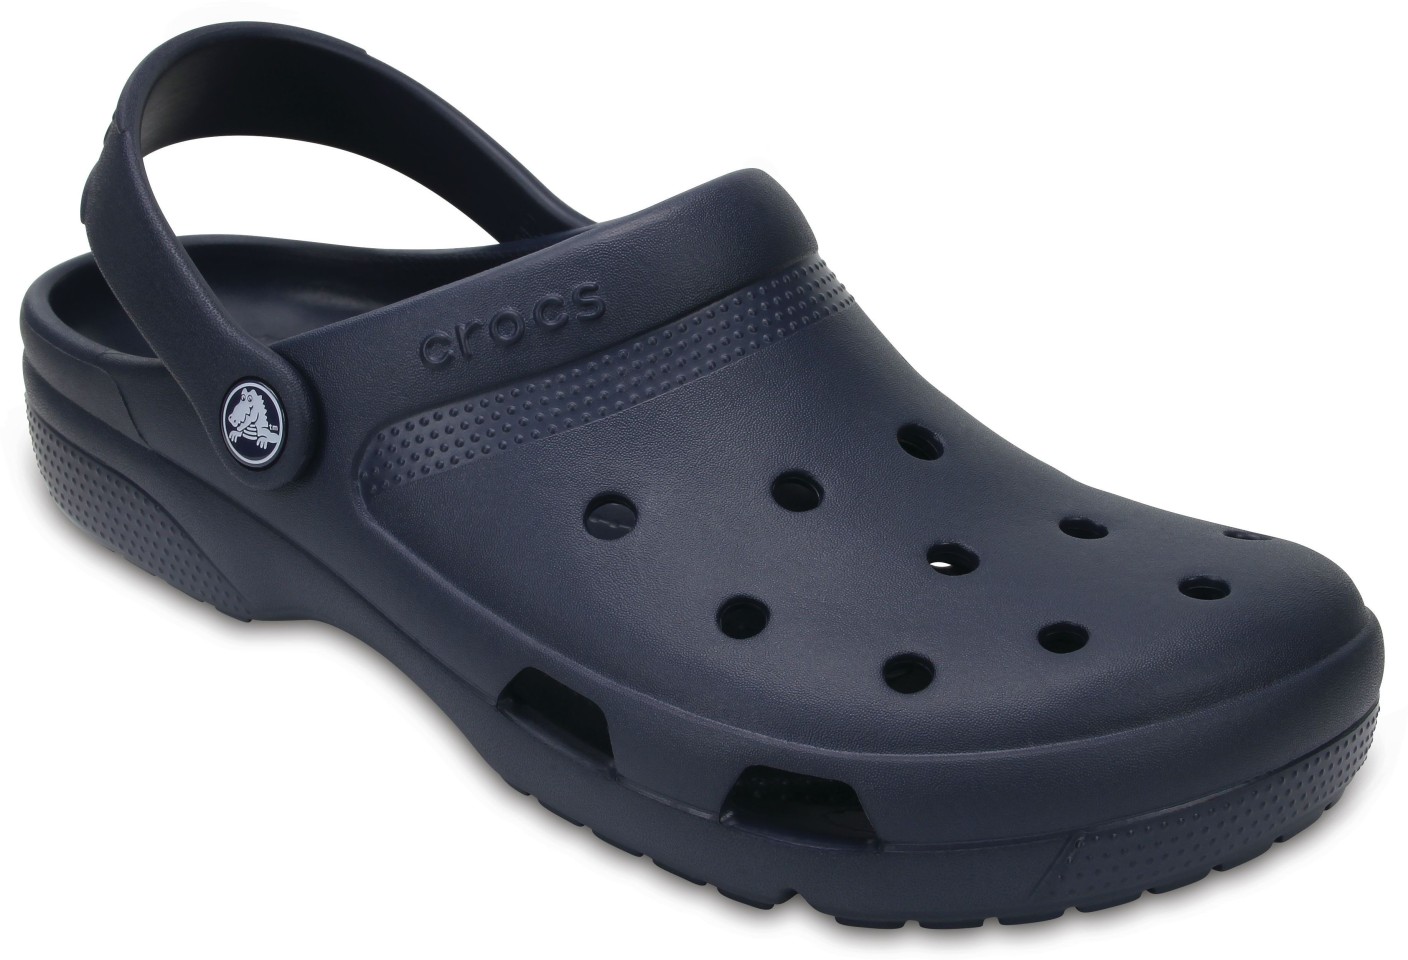 Crocs Men Navy Sandals - Buy Crocs Men Navy Sandals Online at Best ...